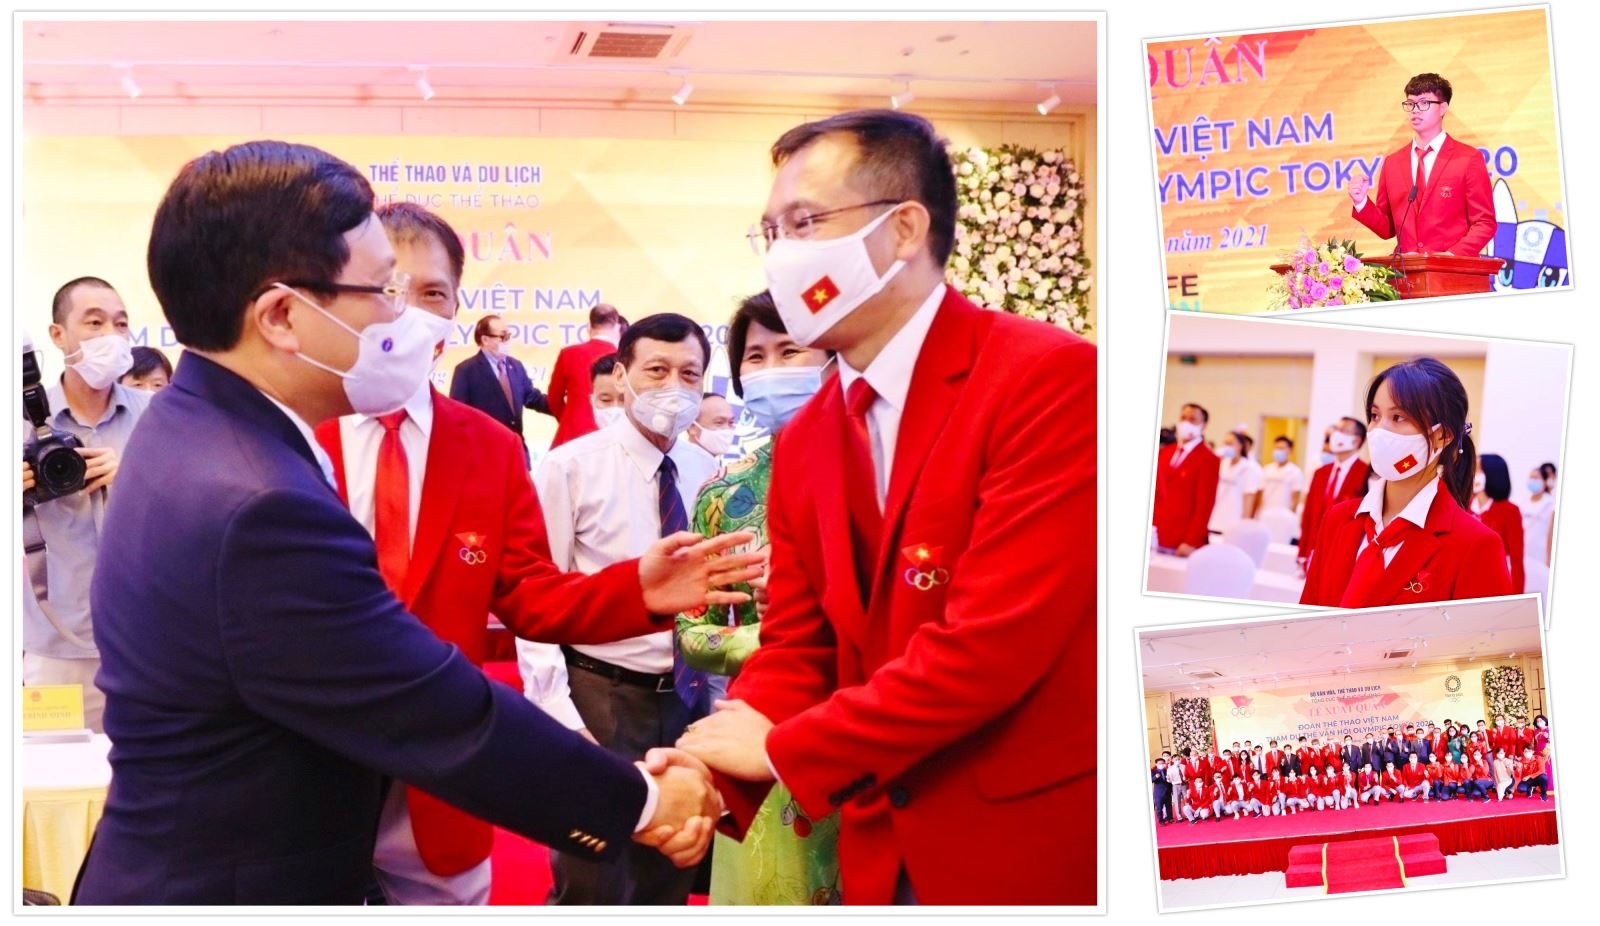 Phó Thủ tướng Phạm Bình Minh trao cờ Tổ quốc, truyền cả niềm tin tưởng và quyết tâm cho Đoàn Thể thao Việt Nam tham dự Olympic Tokyo 2020.